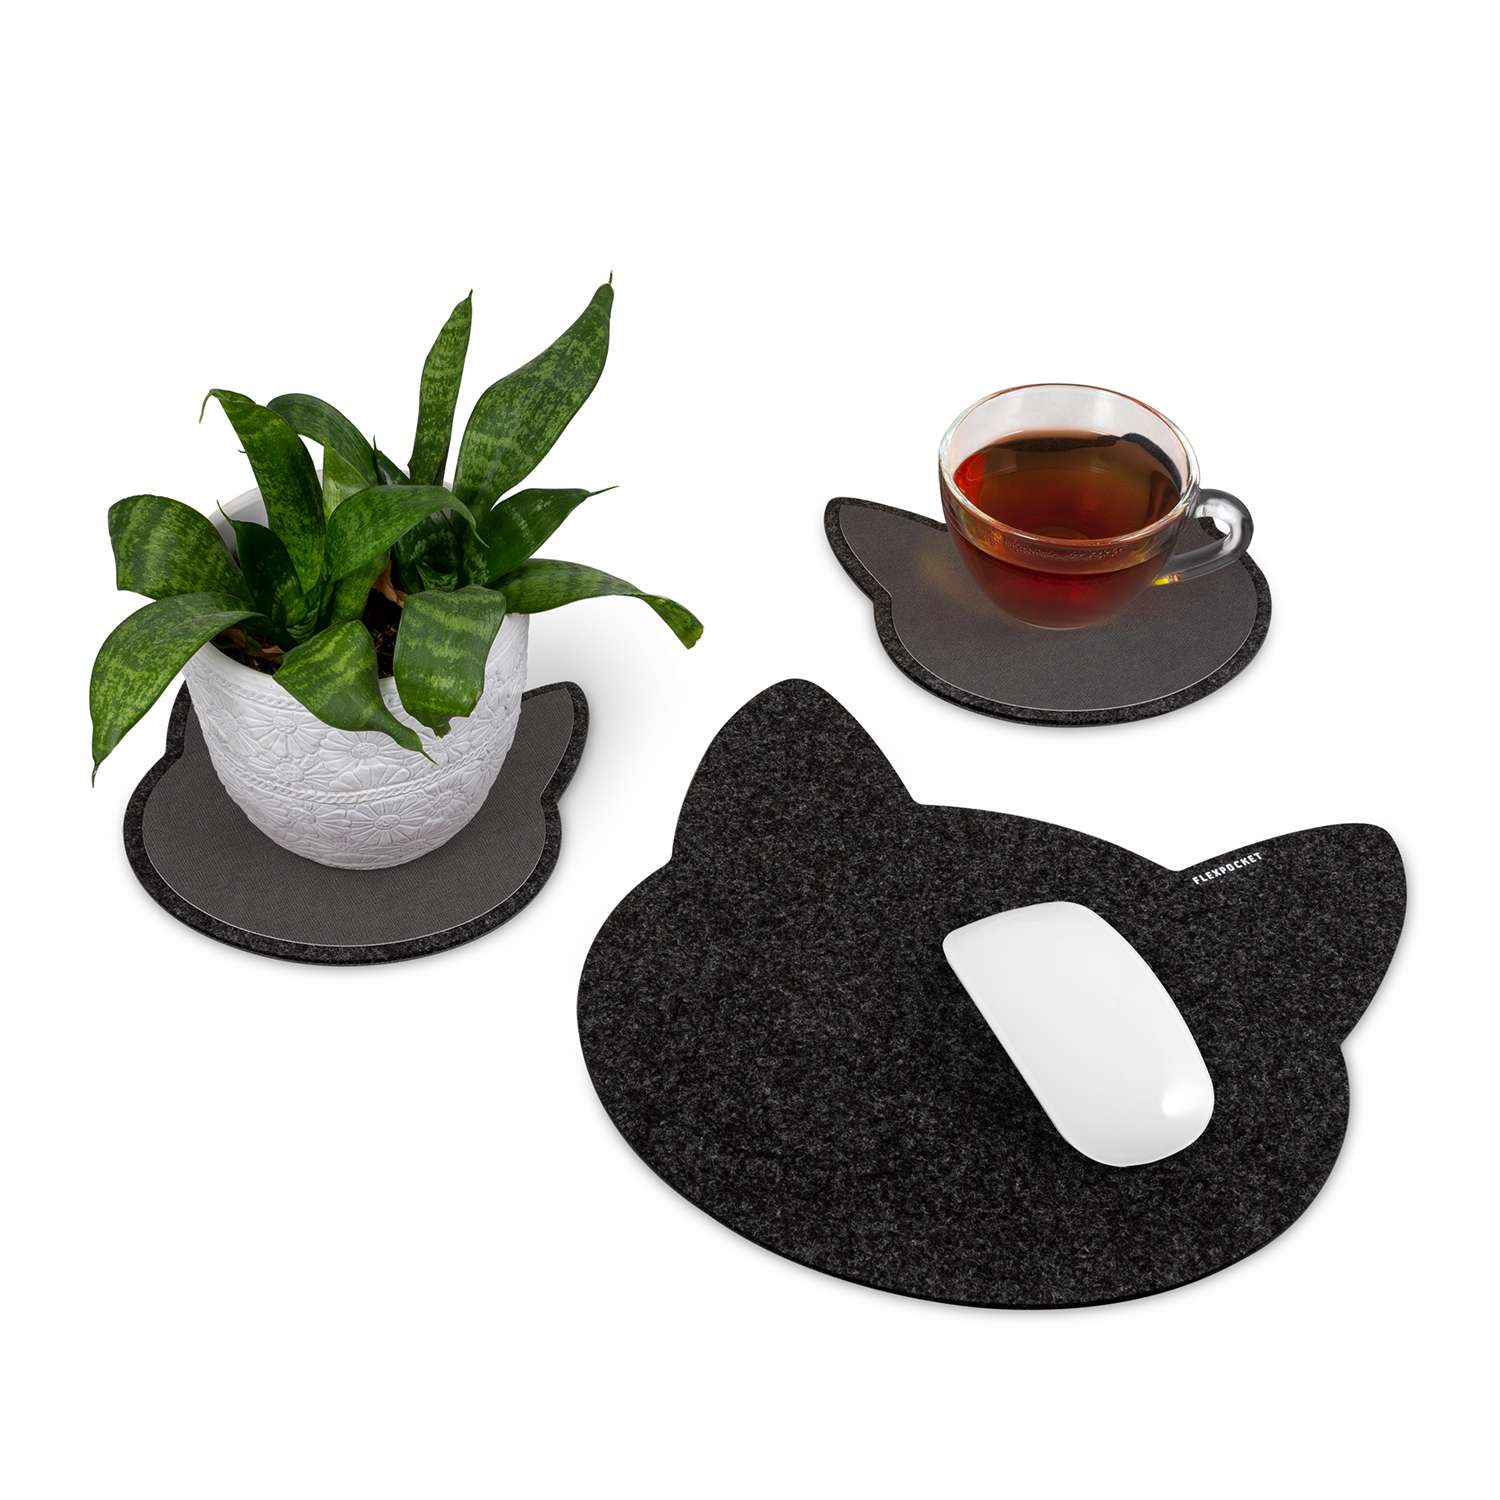 Настольный коврик Flexpocket для мыши в виде кошки + комплект с подставкой под кружку черный - фото 3